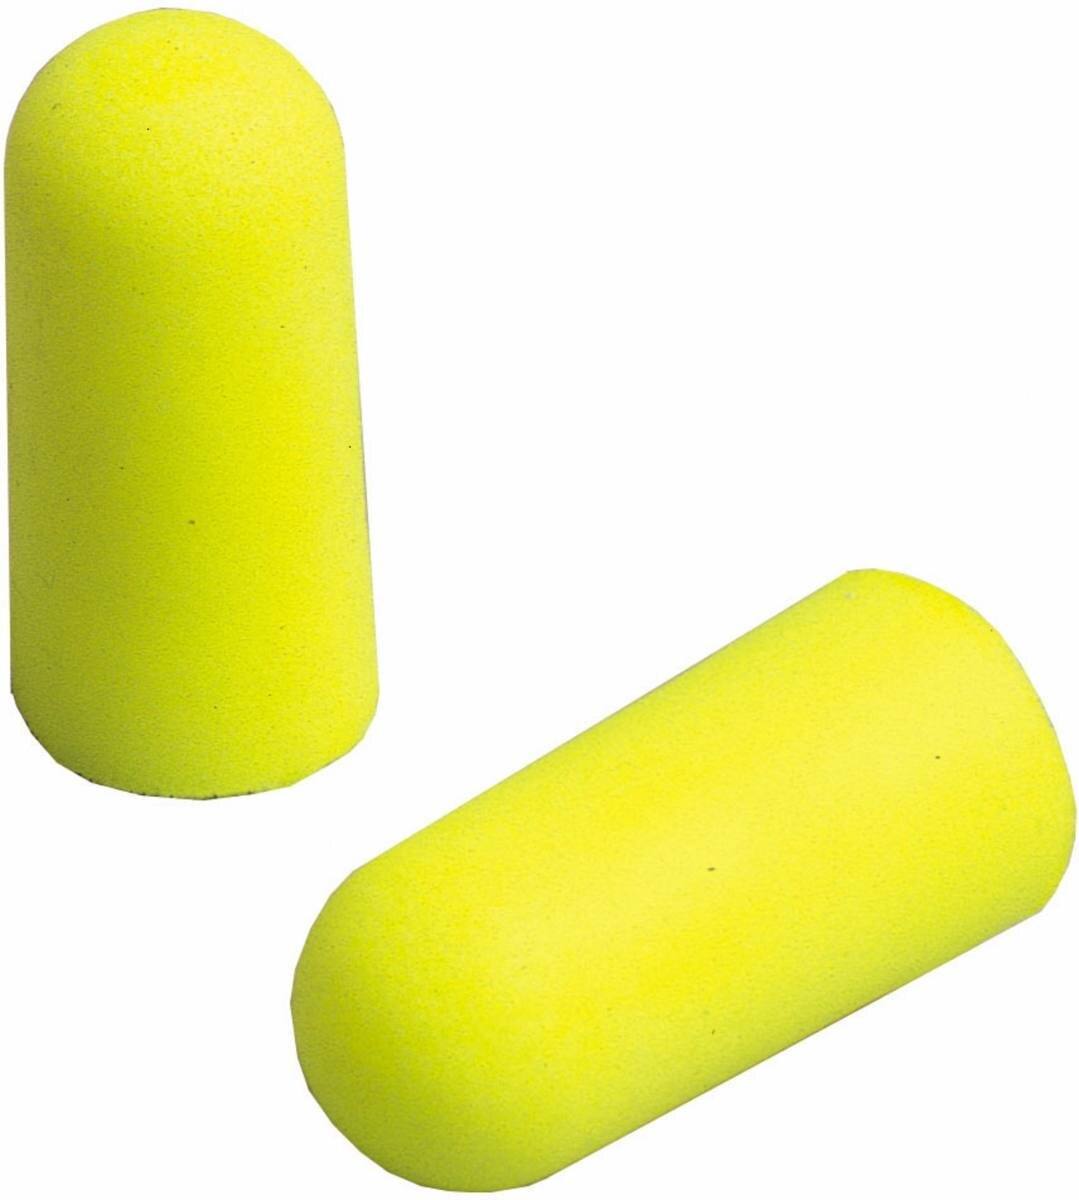 3M E-A-R Soft Yellow Neons, polyuréthane, jaune fluo, 5 paires emballées dans un sac plastique refermable avec une languette en carton (trou européen), SNR=36 dB, ES01001S